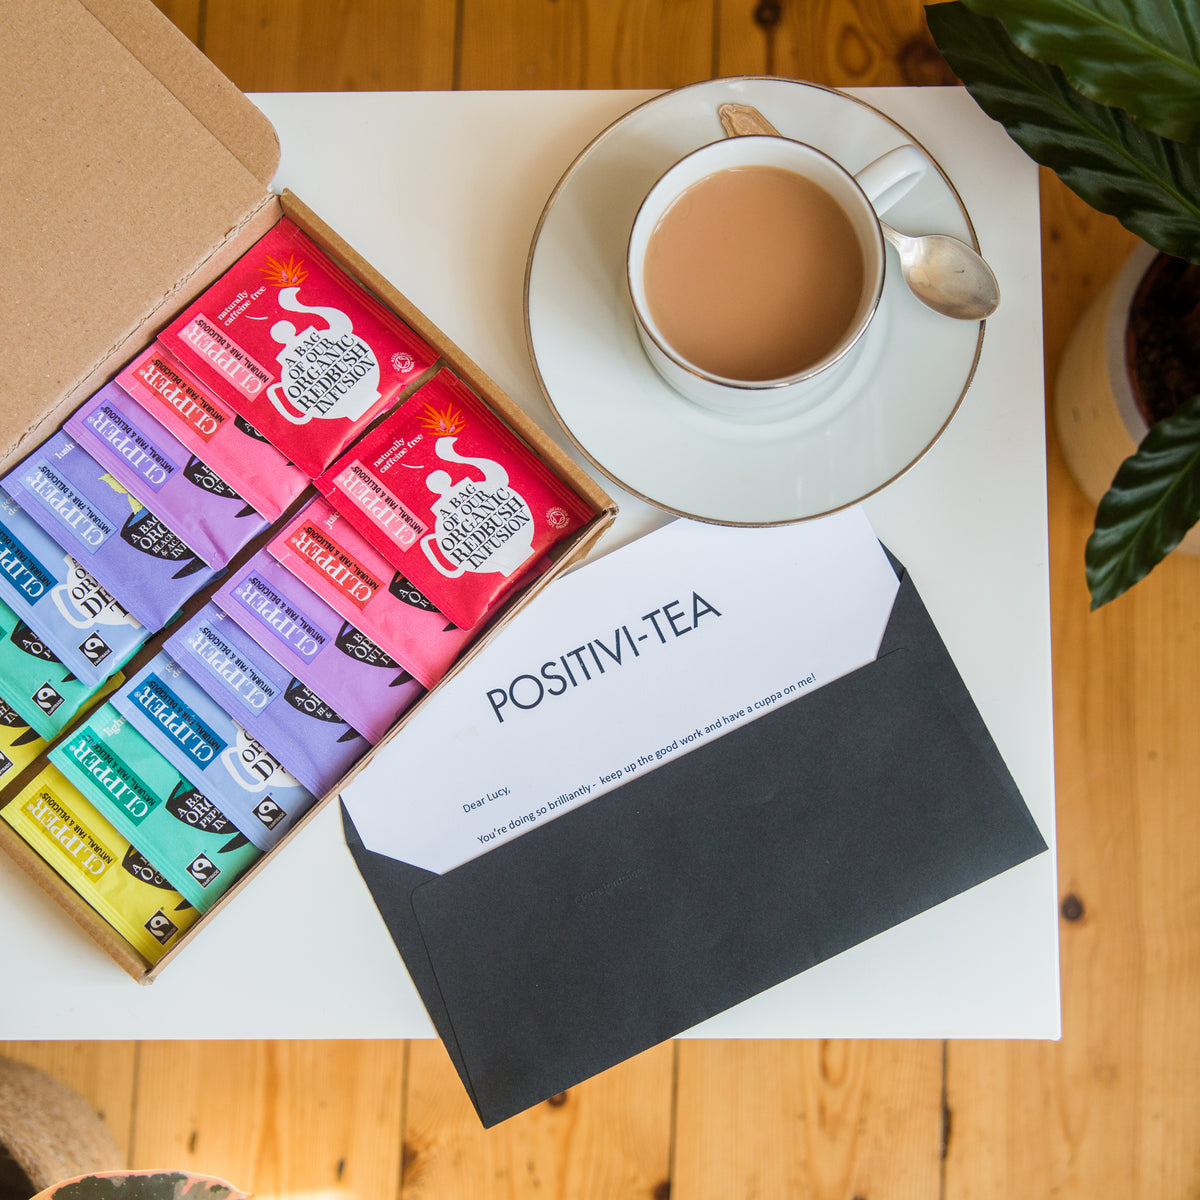 Rainbow of Tea Personalised Gift Set